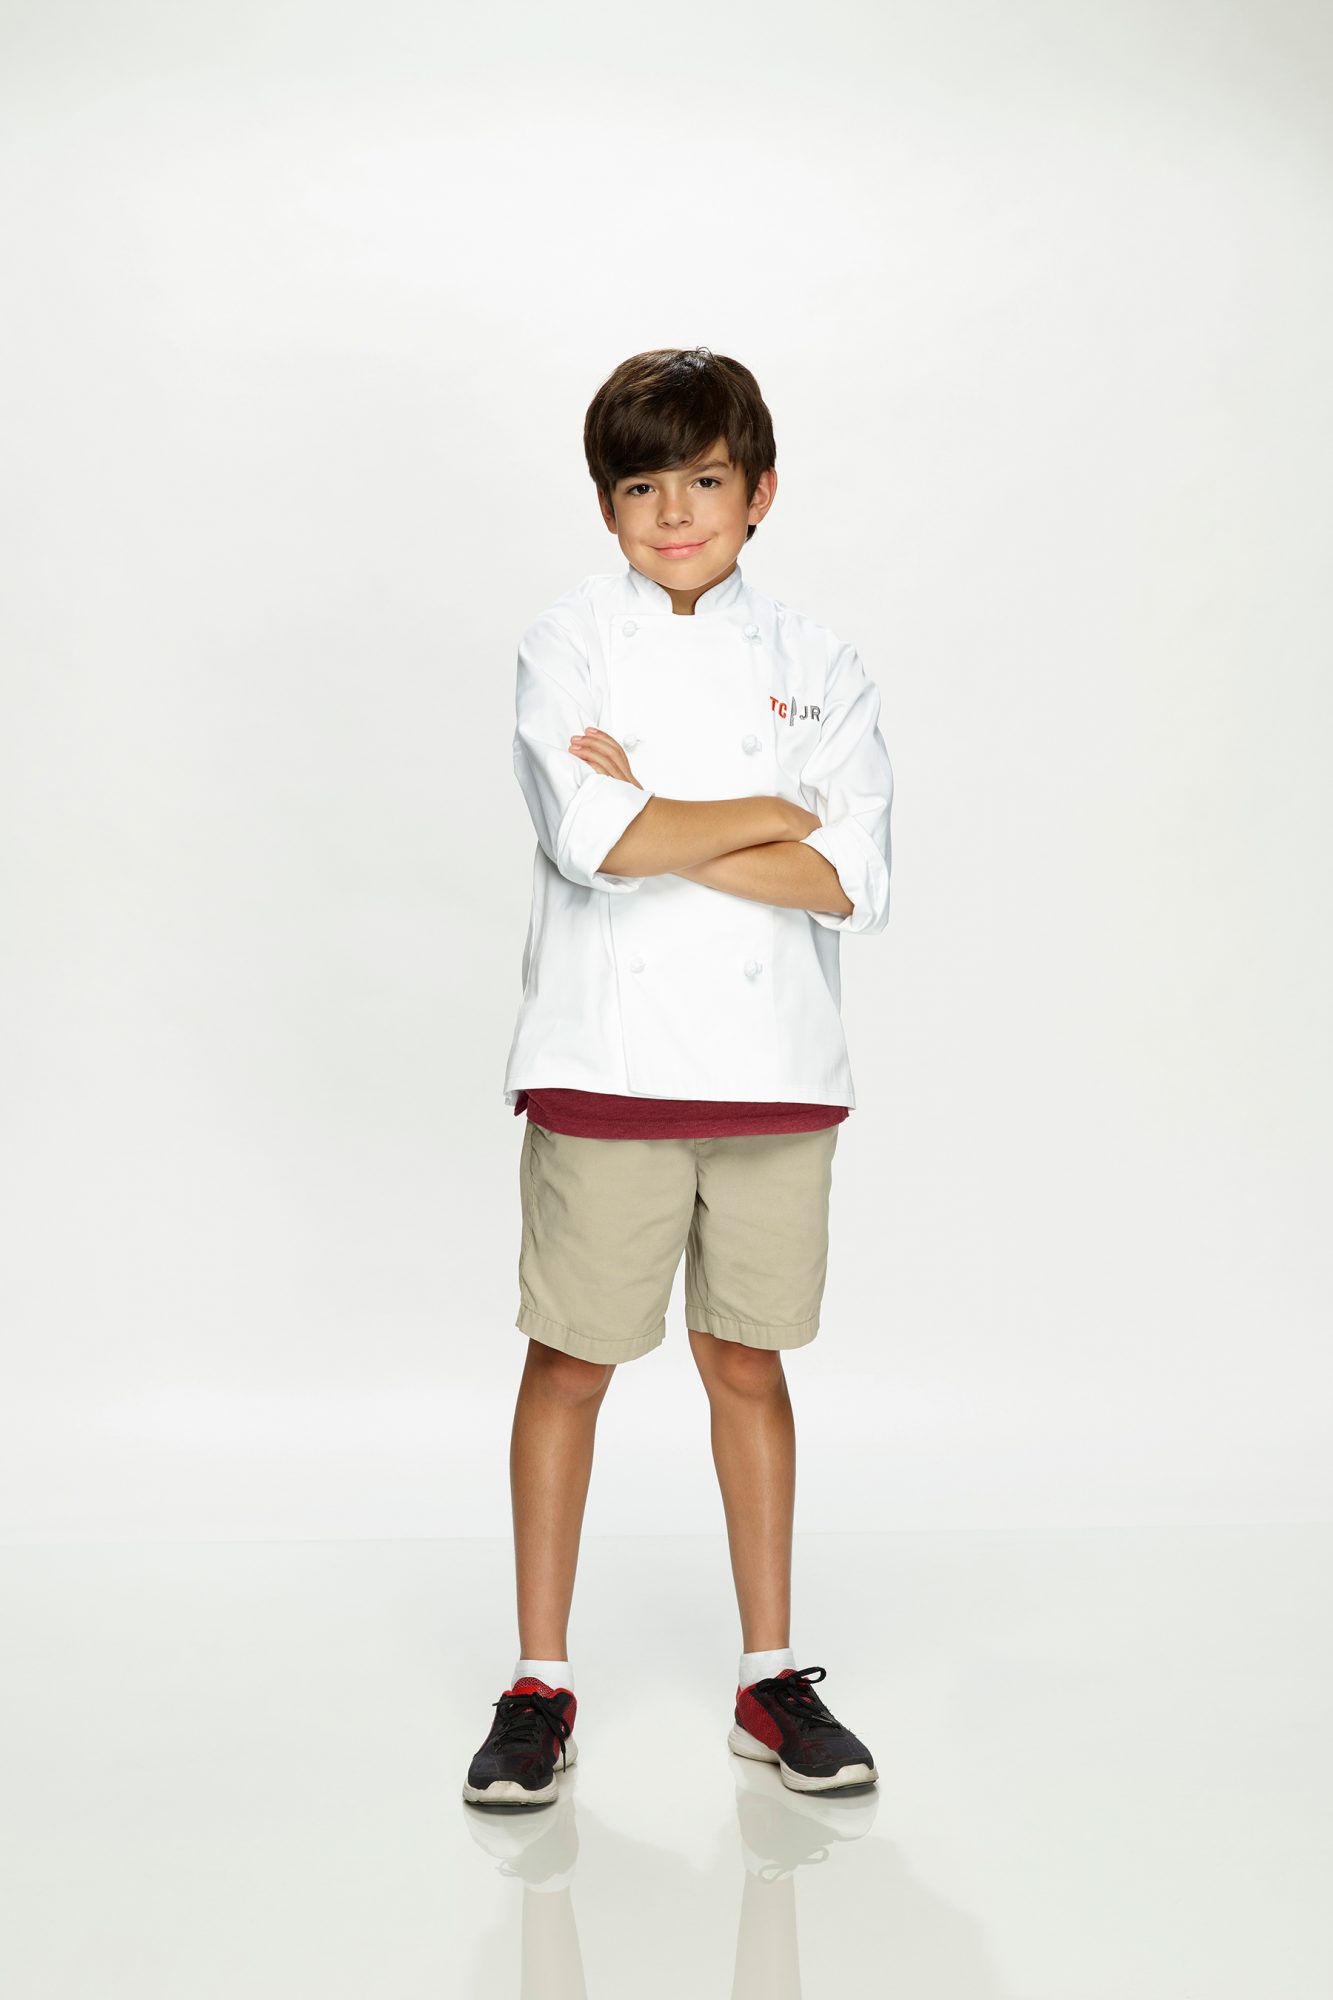 Top Chef Junior - Season 1